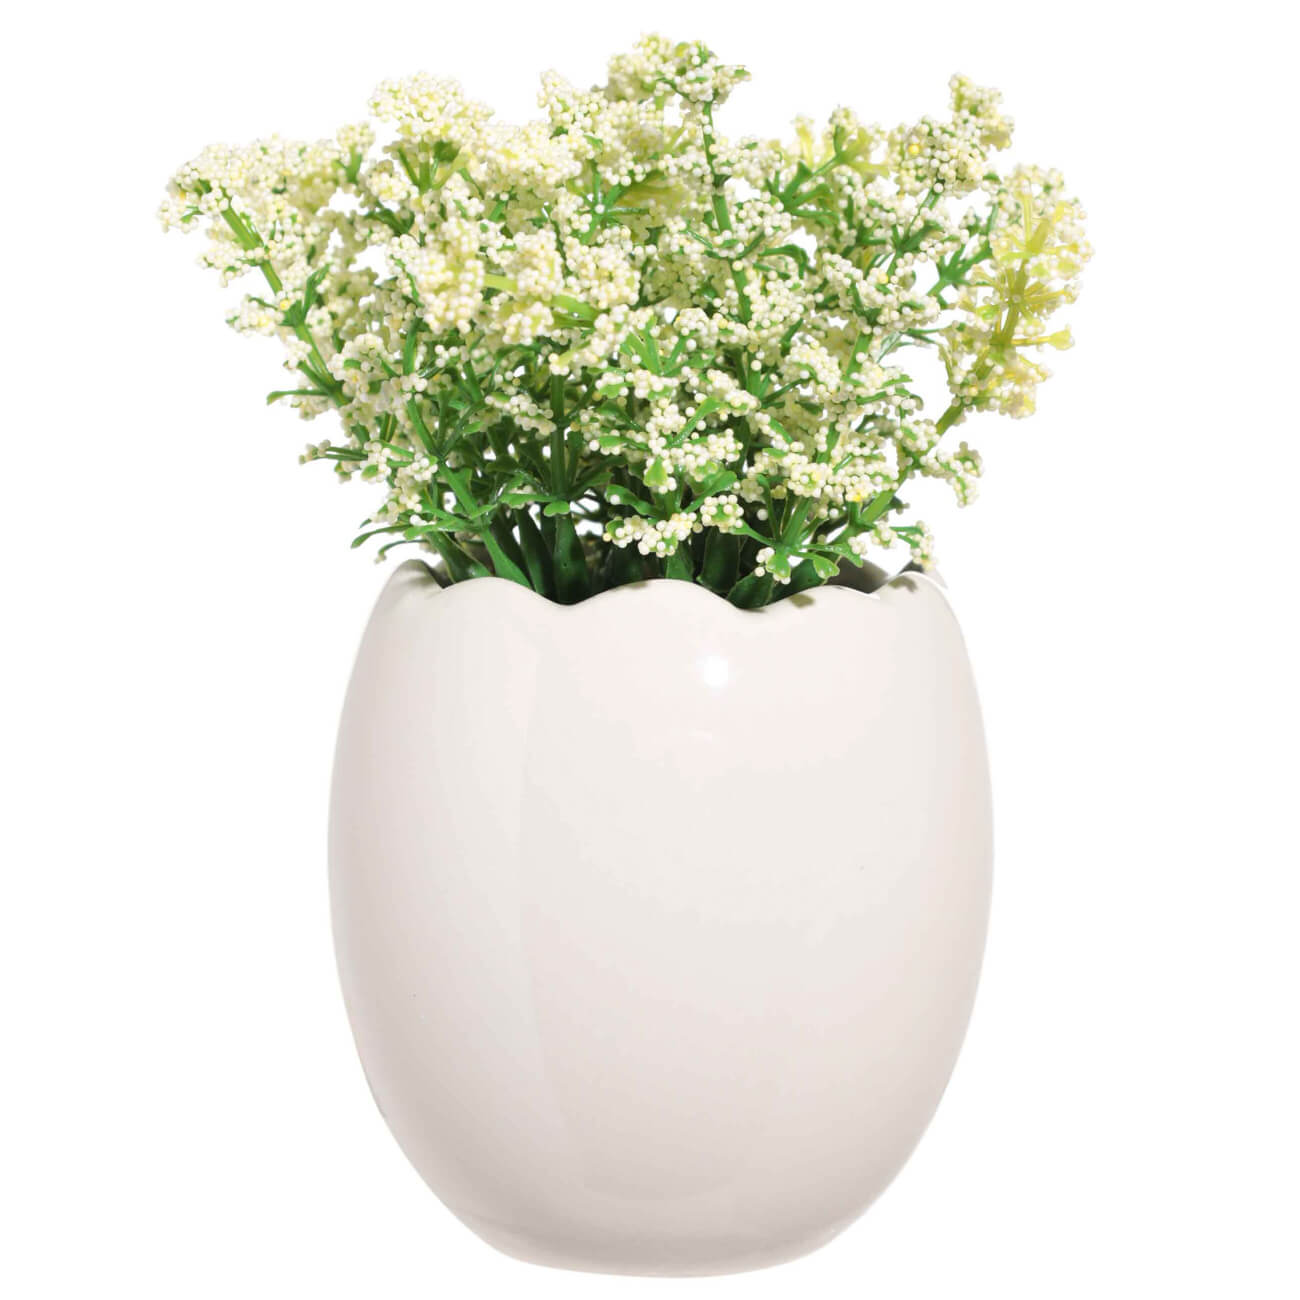 Растение искусственное, 22 см, в горшке, керамика/пенопласт, Белые цветы, Pot garden